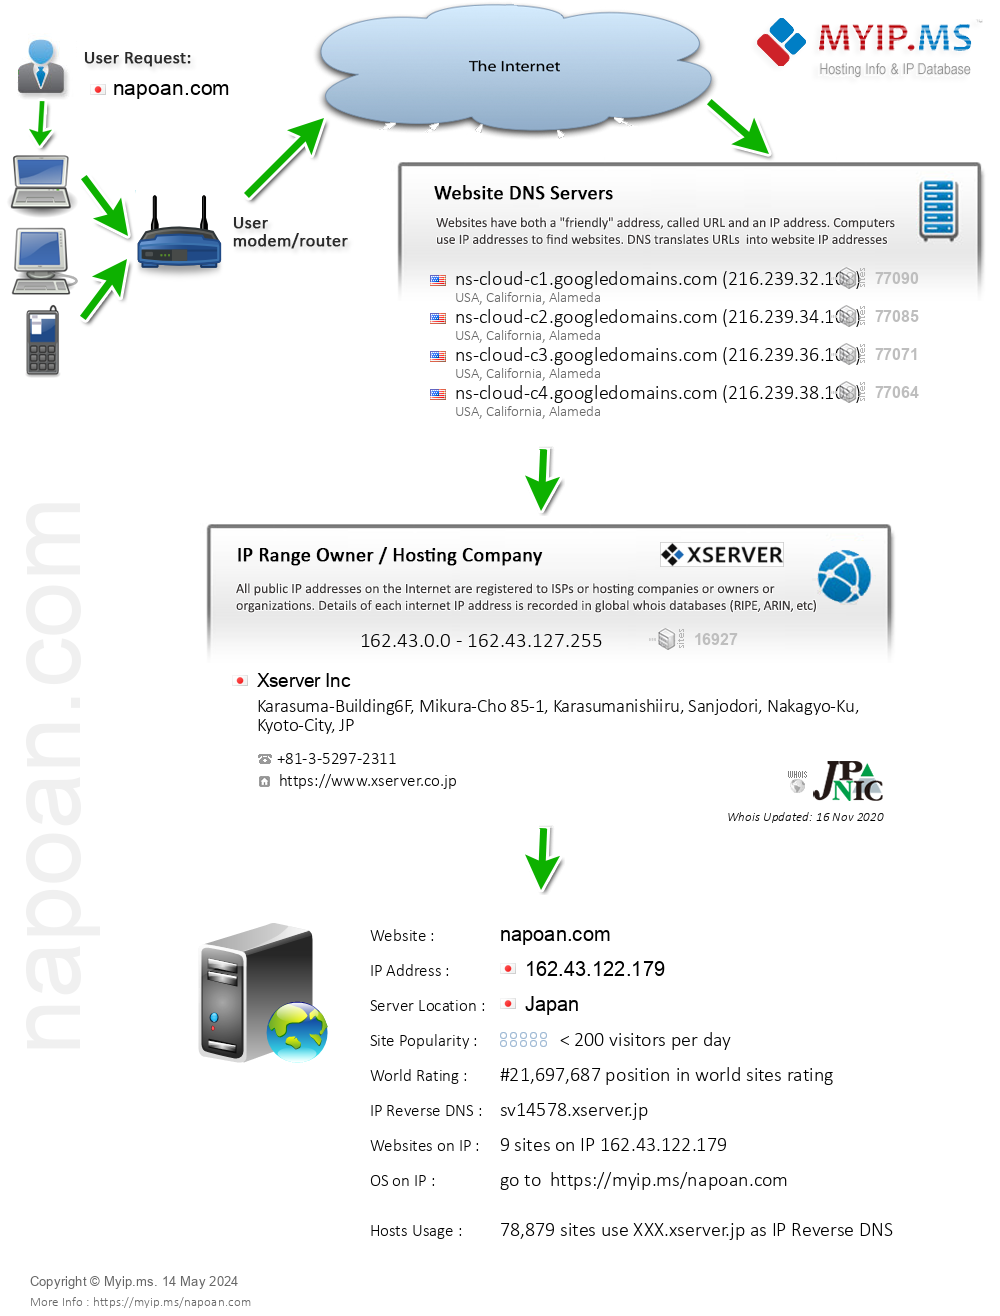 Napoan.com - Website Hosting Visual IP Diagram